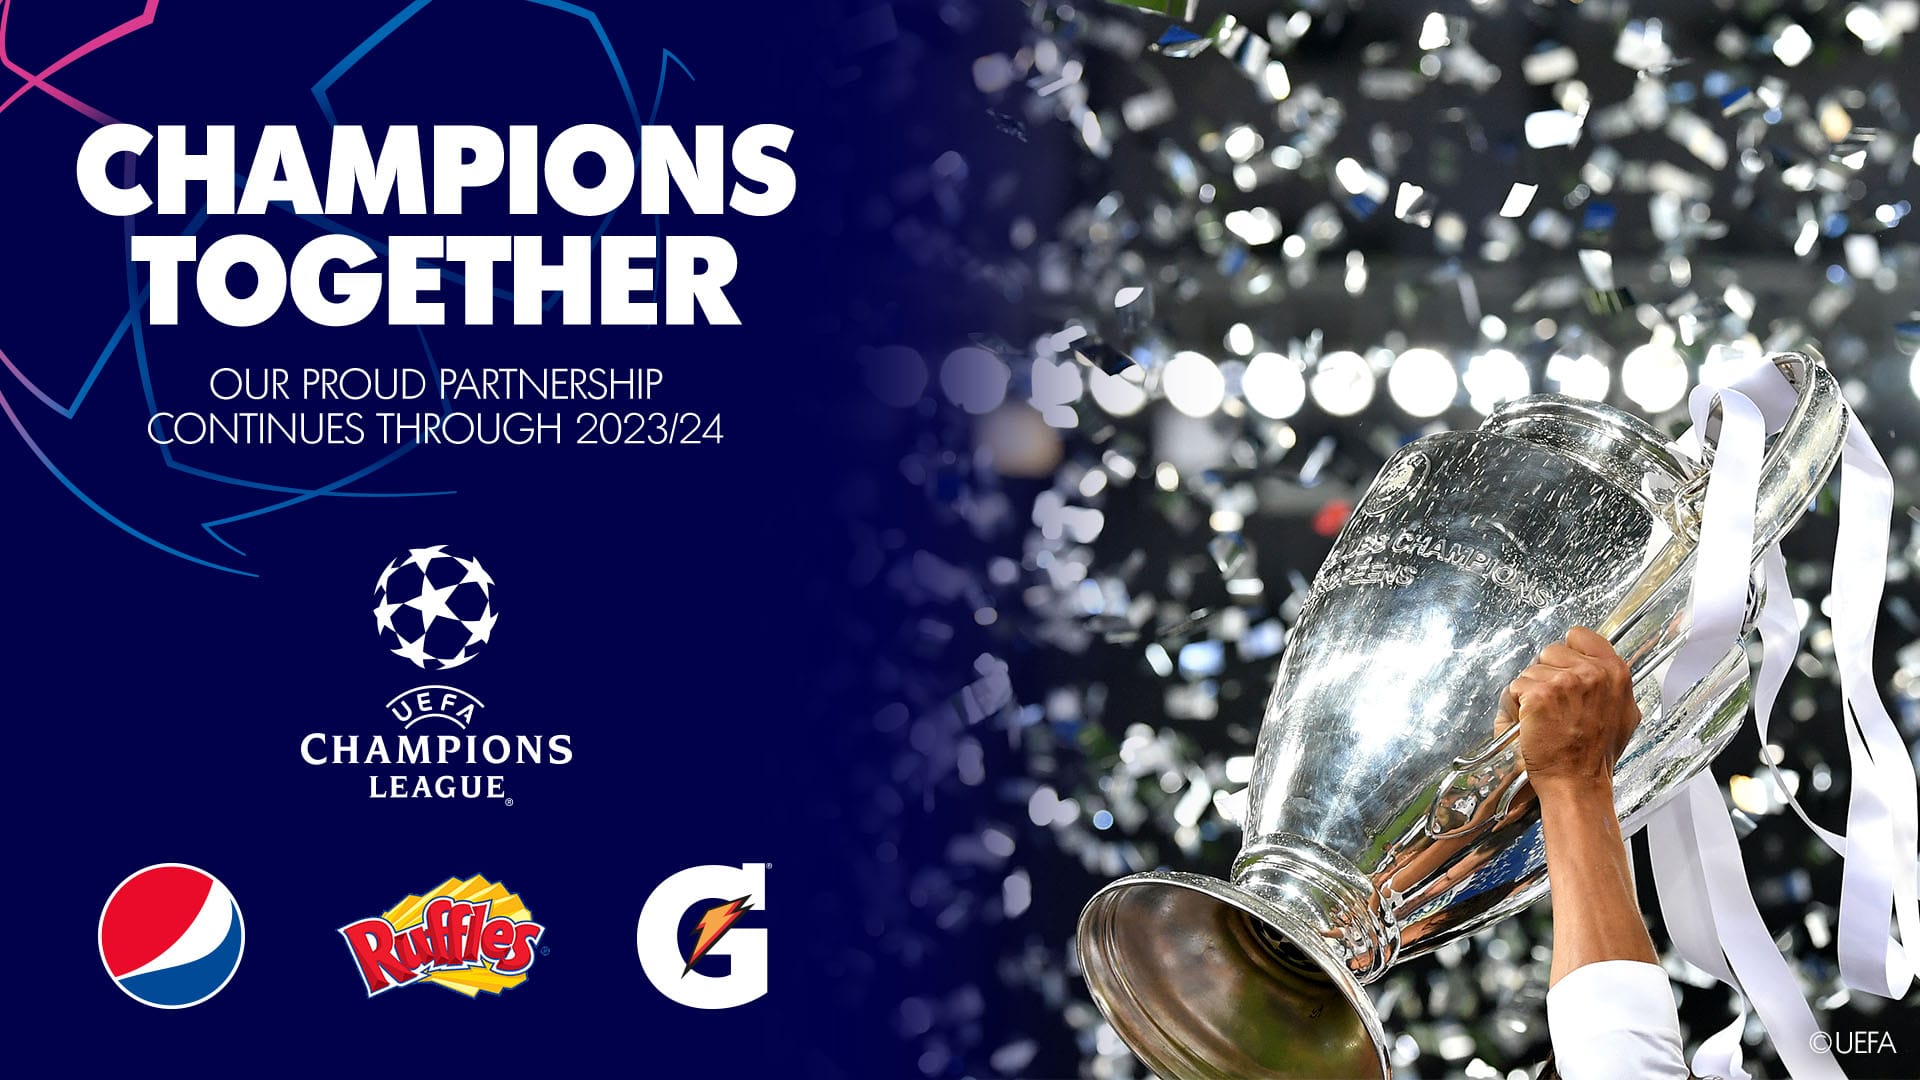 Finali İstanbul’da Oynanacak UEFA Şampiyonlar Ligi Sponsoru PepsiCo, İletişim Stratejilerini Açıklıyor